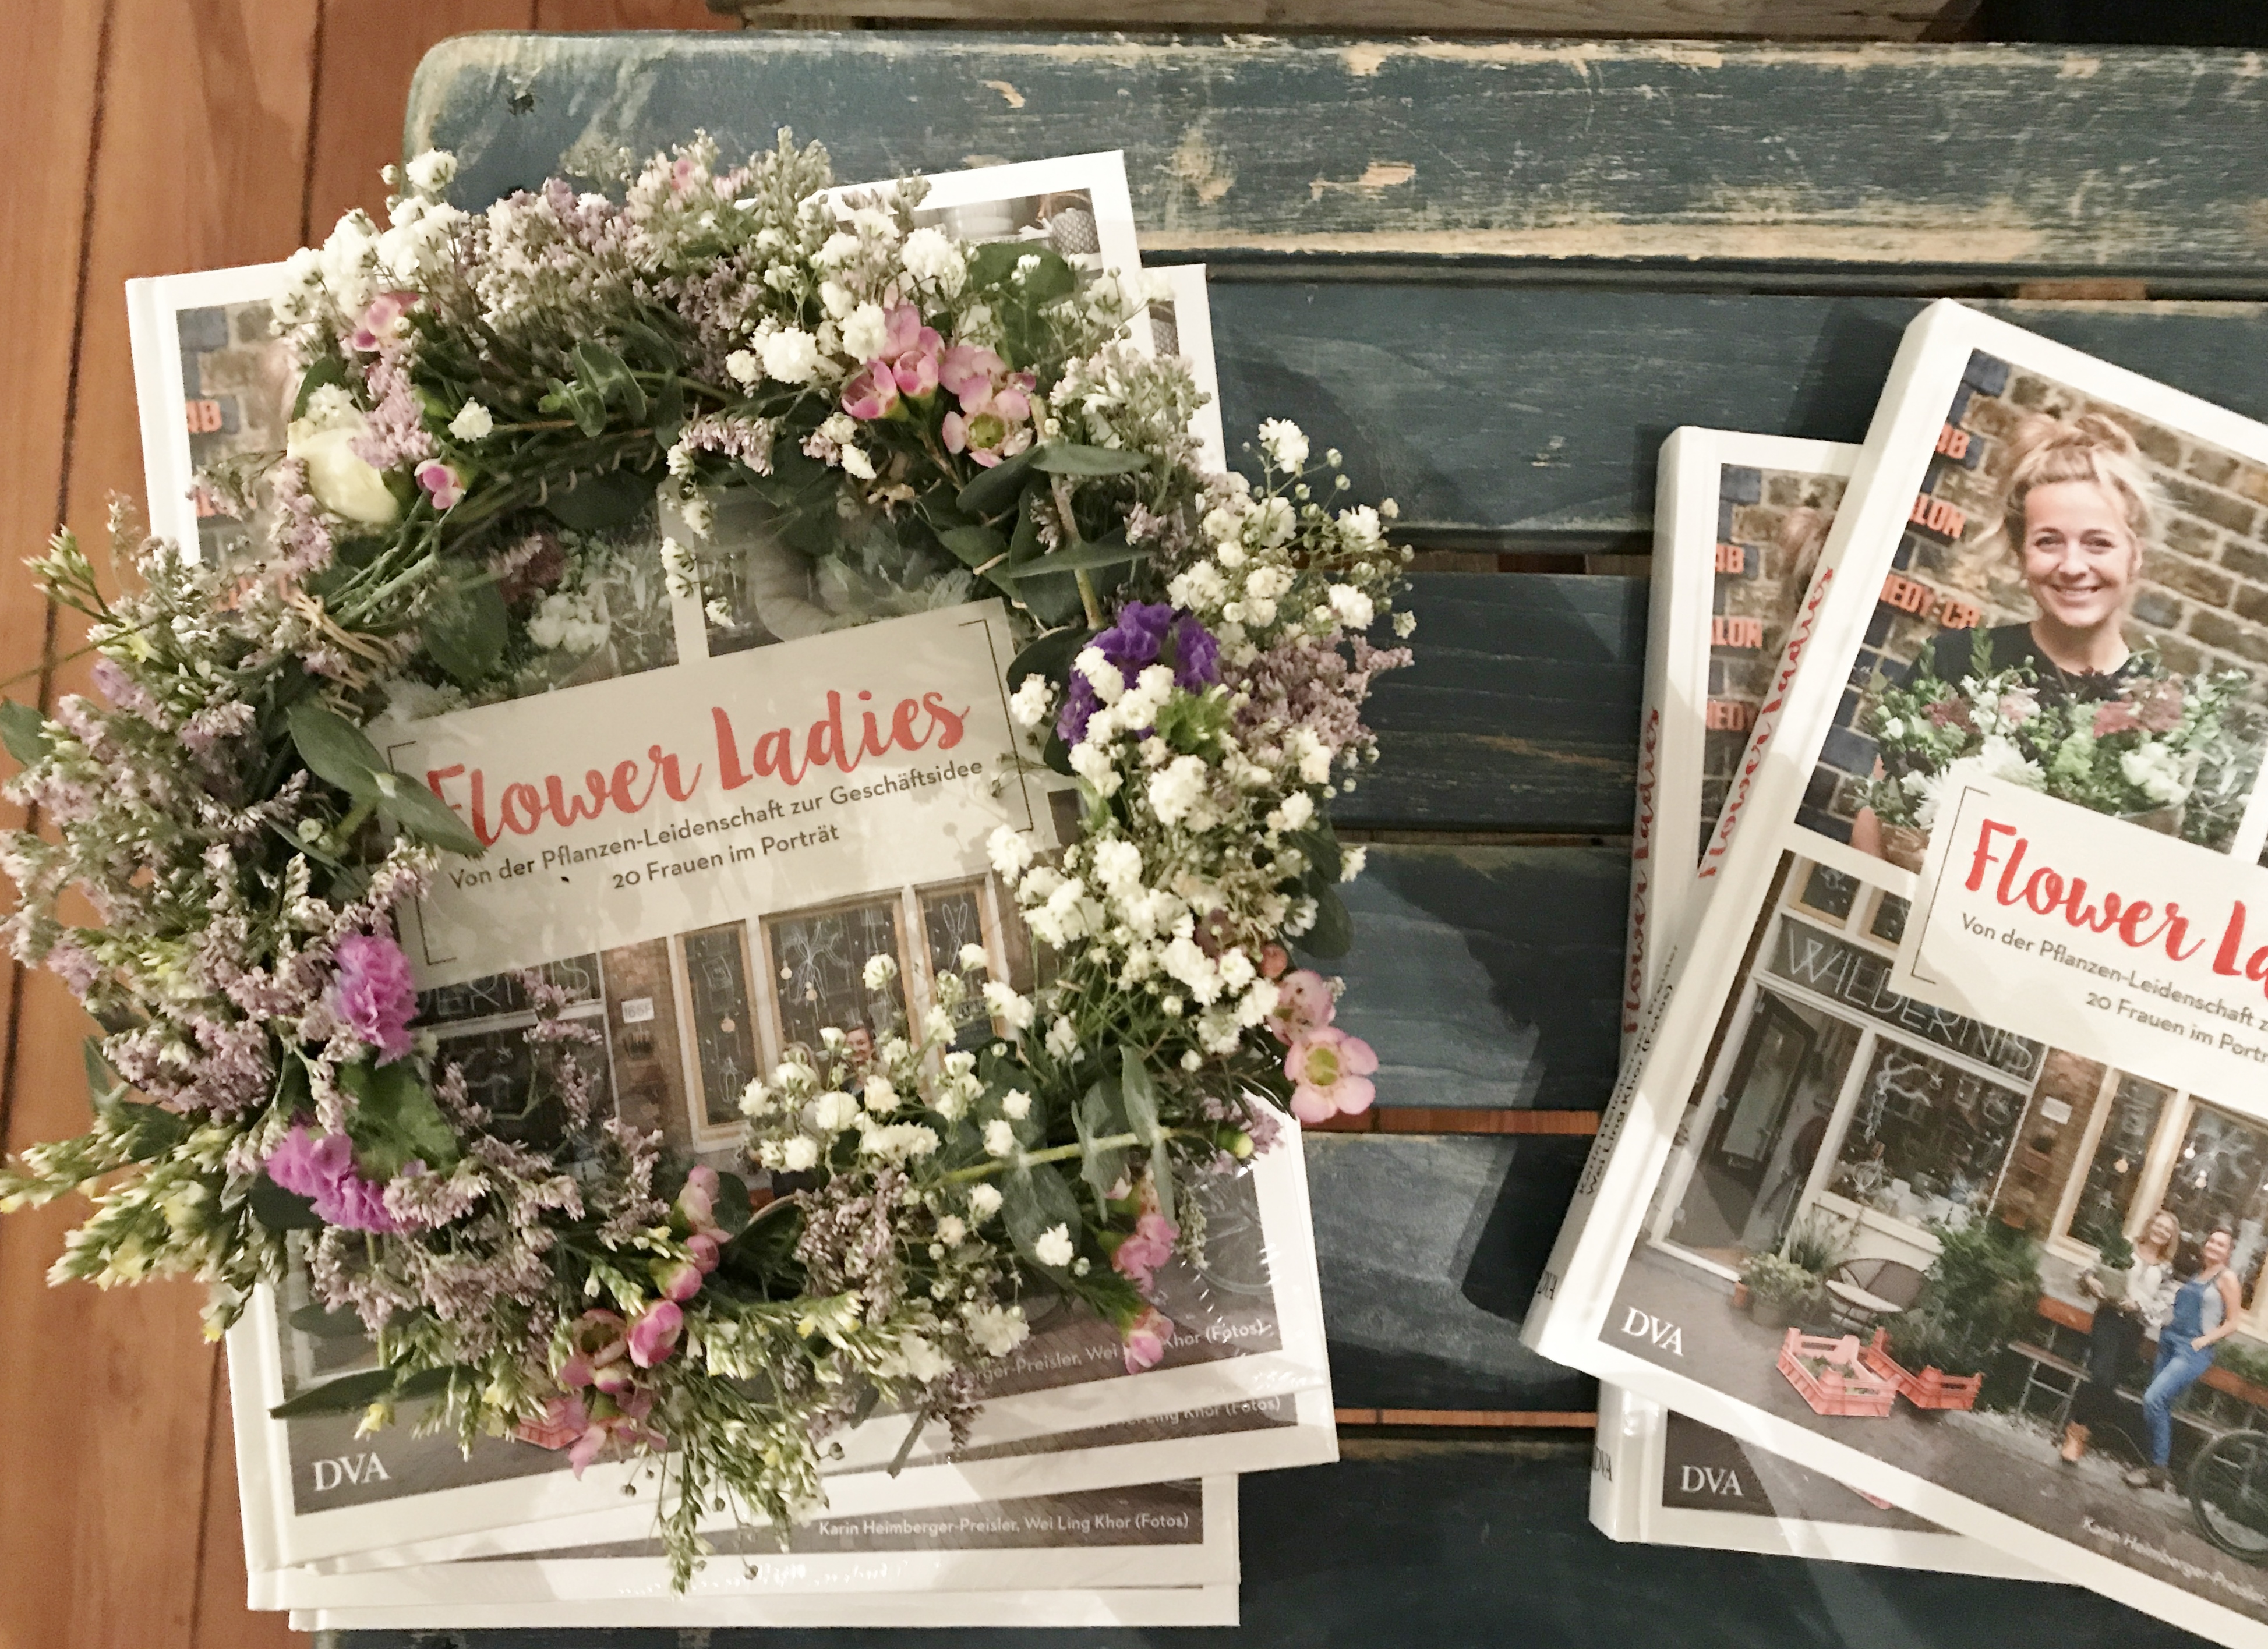 Flower Ladies – Das Buch von großer Blumenliebe und grünen Geschäftsideen